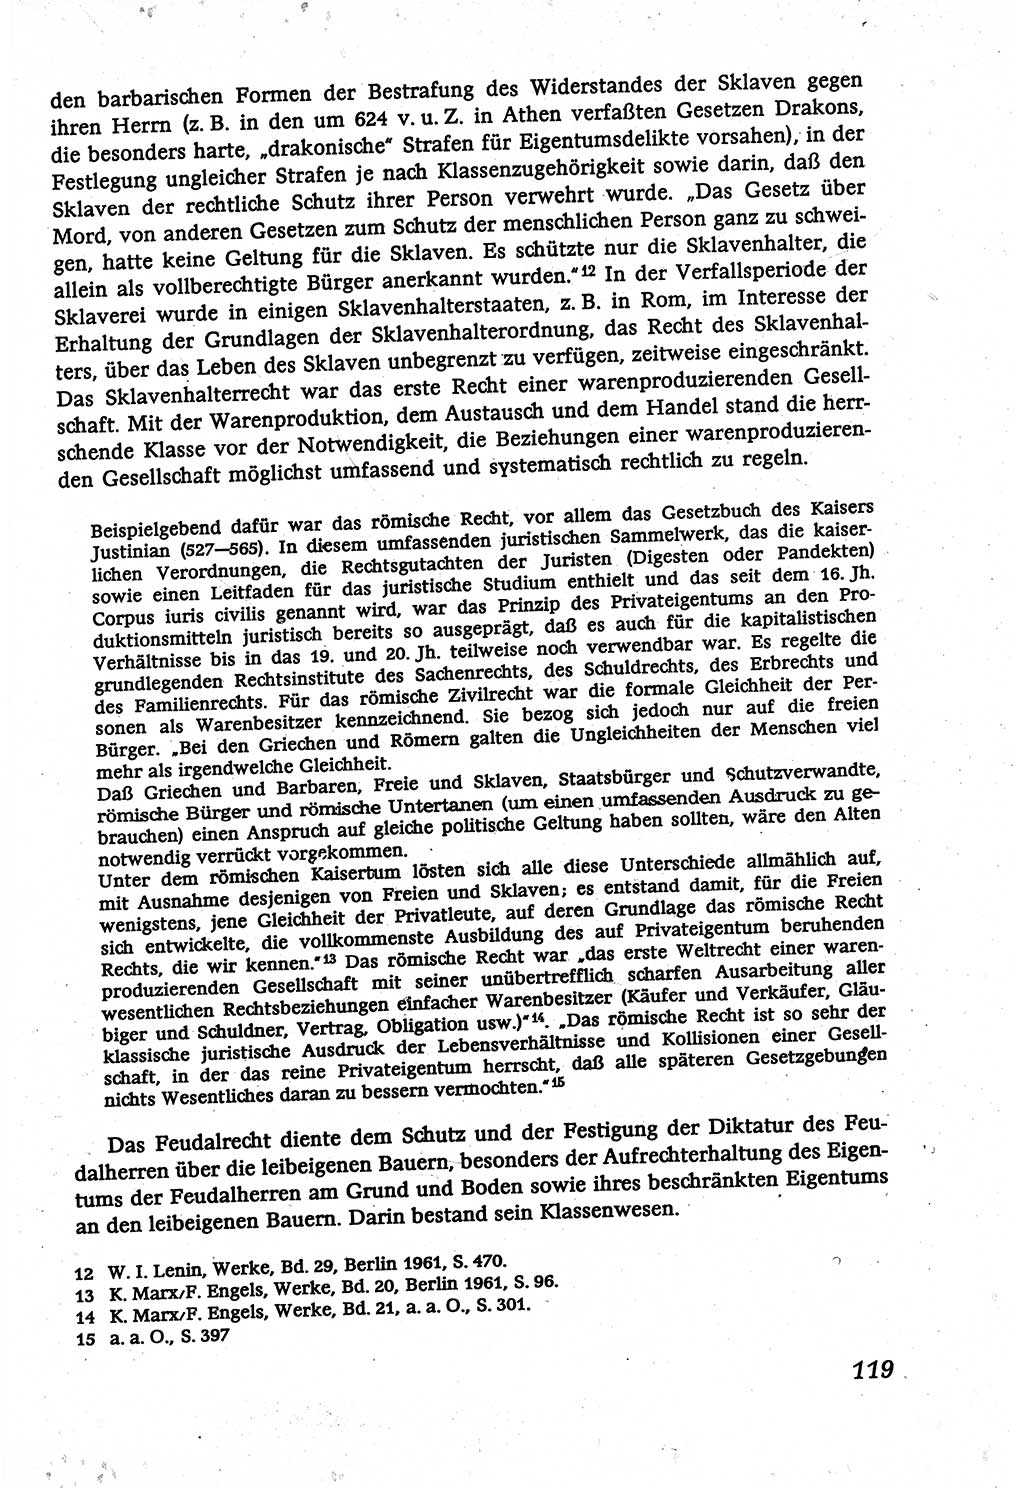 Marxistisch-leninistische (ML) Staats- und Rechtstheorie [Deutsche Demokratische Republik (DDR)], Lehrbuch 1980, Seite 119 (ML St.-R.-Th. DDR Lb. 1980, S. 119)